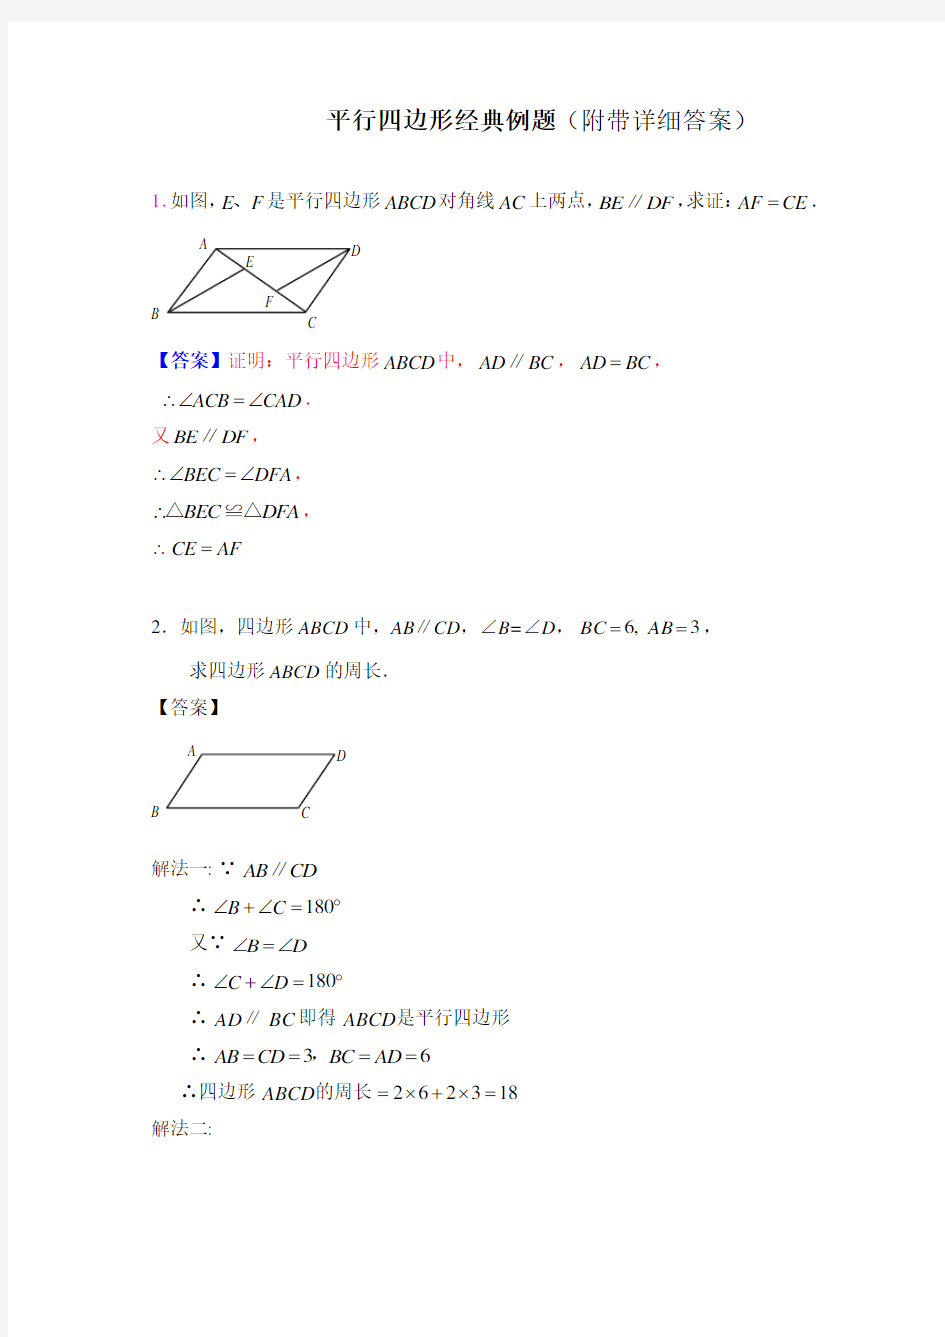 (完整)初中数学平行四边形经典例题讲解(3套)